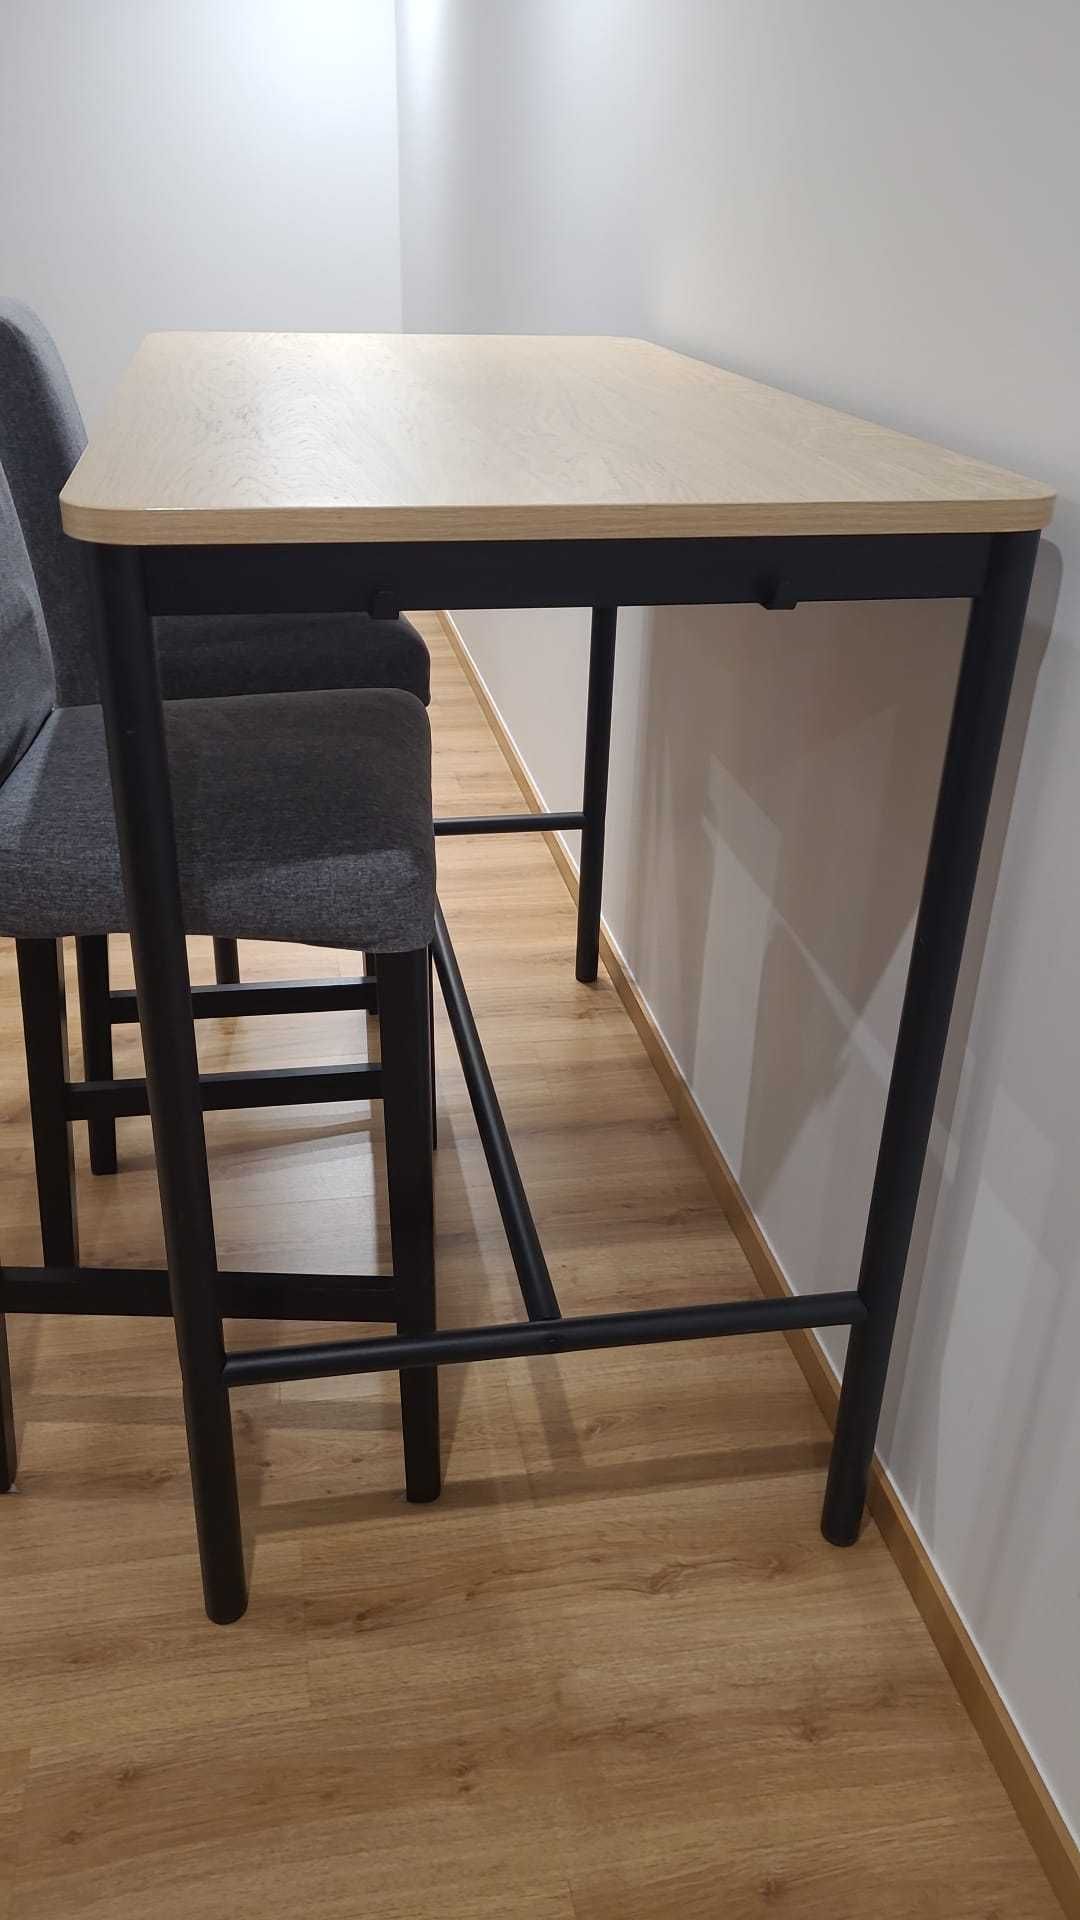 Oportunidade! Mesa com banco alto com encosto Ikea